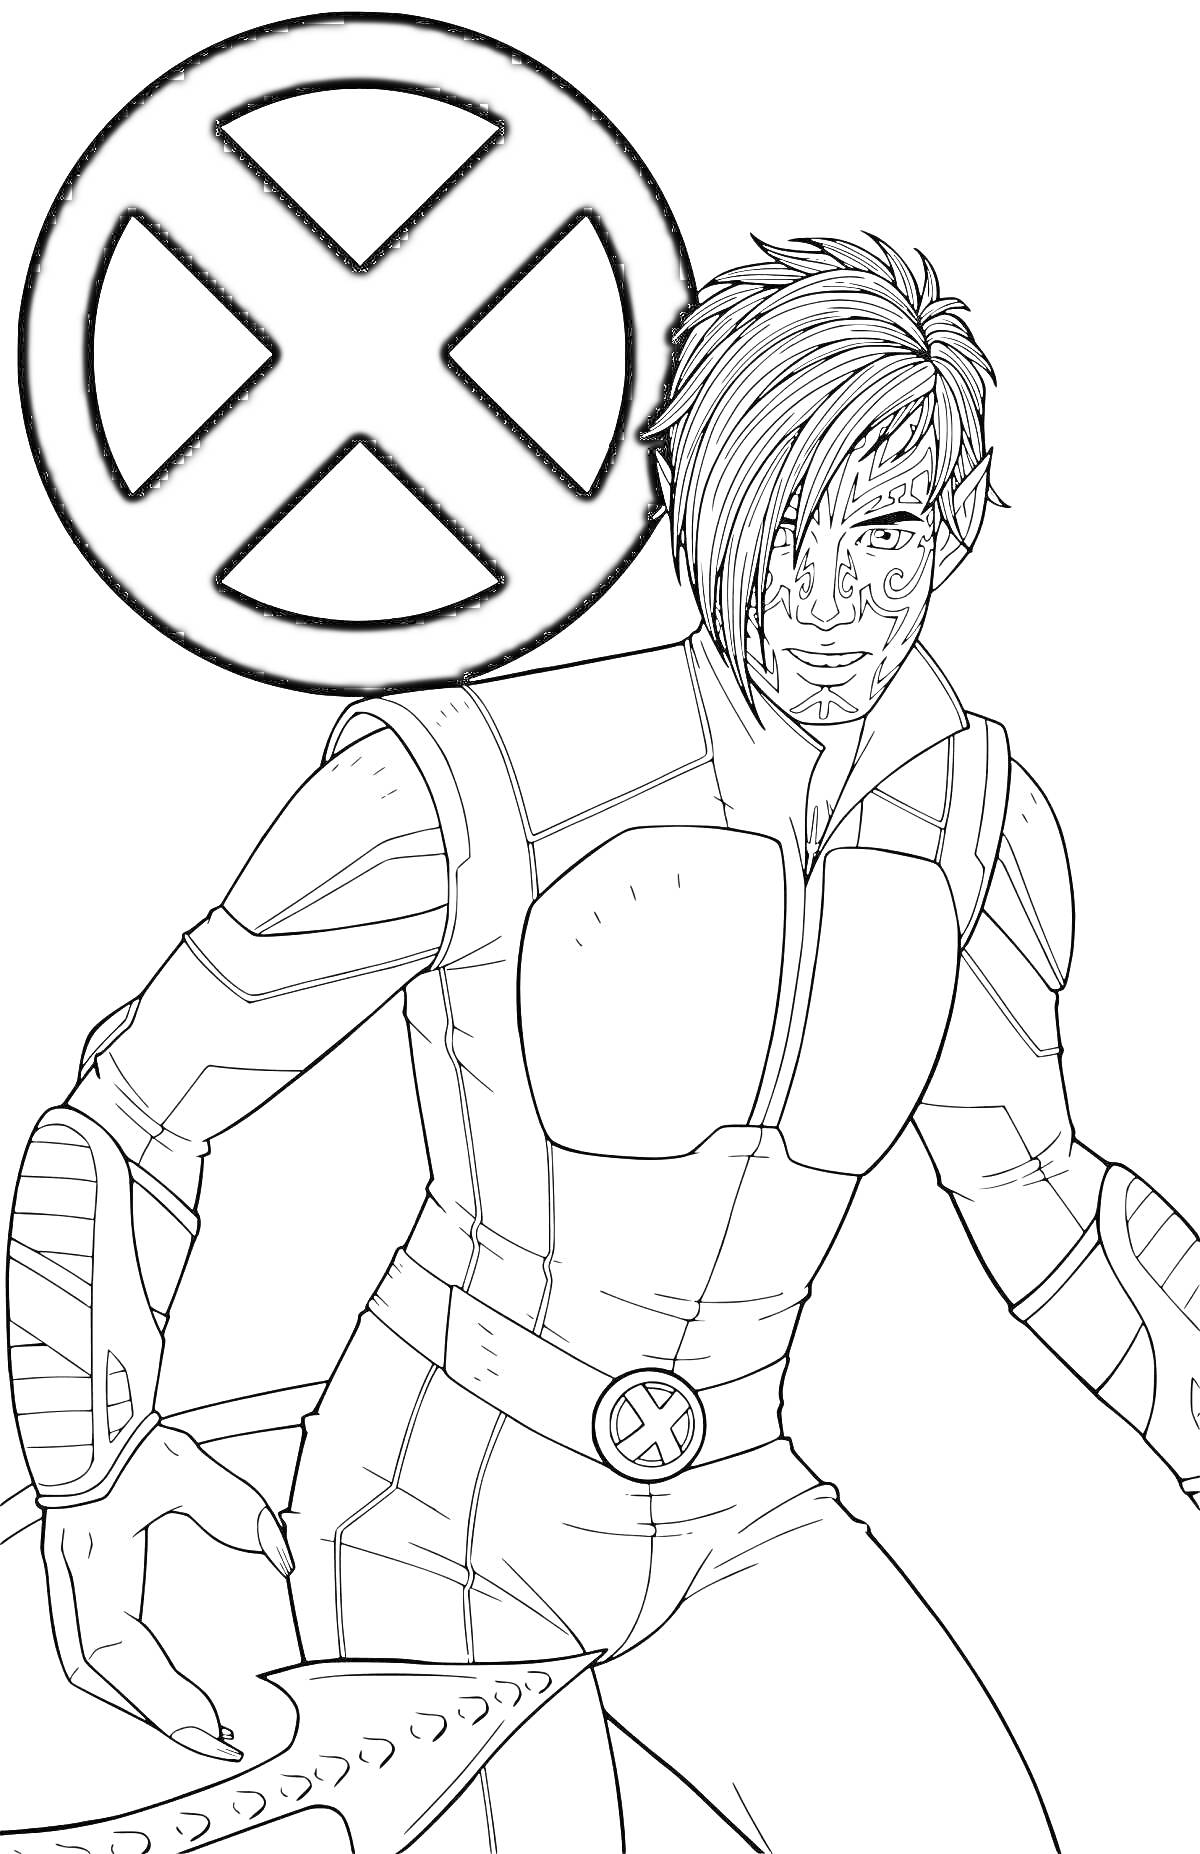 Раскраска Ксавье Торп с эмблемой X-Men, в костюме, с оружием